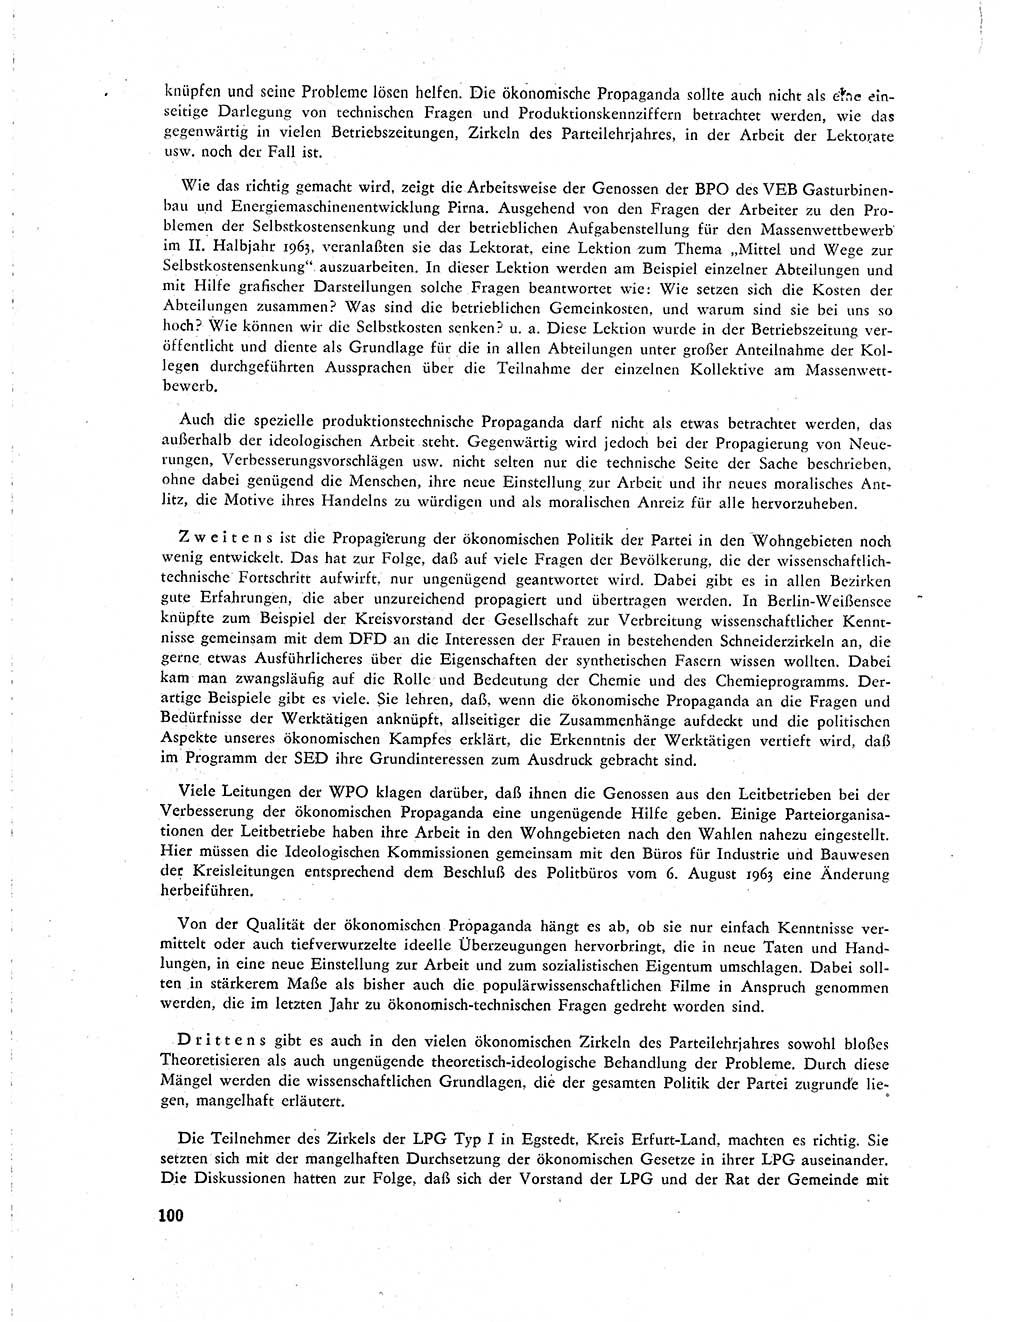 Neuer Weg (NW), Organ des Zentralkomitees (ZK) der SED (Sozialistische Einheitspartei Deutschlands) für Fragen des Parteilebens, 19. Jahrgang [Deutsche Demokratische Republik (DDR)] 1964, Seite 100 (NW ZK SED DDR 1964, S. 100)